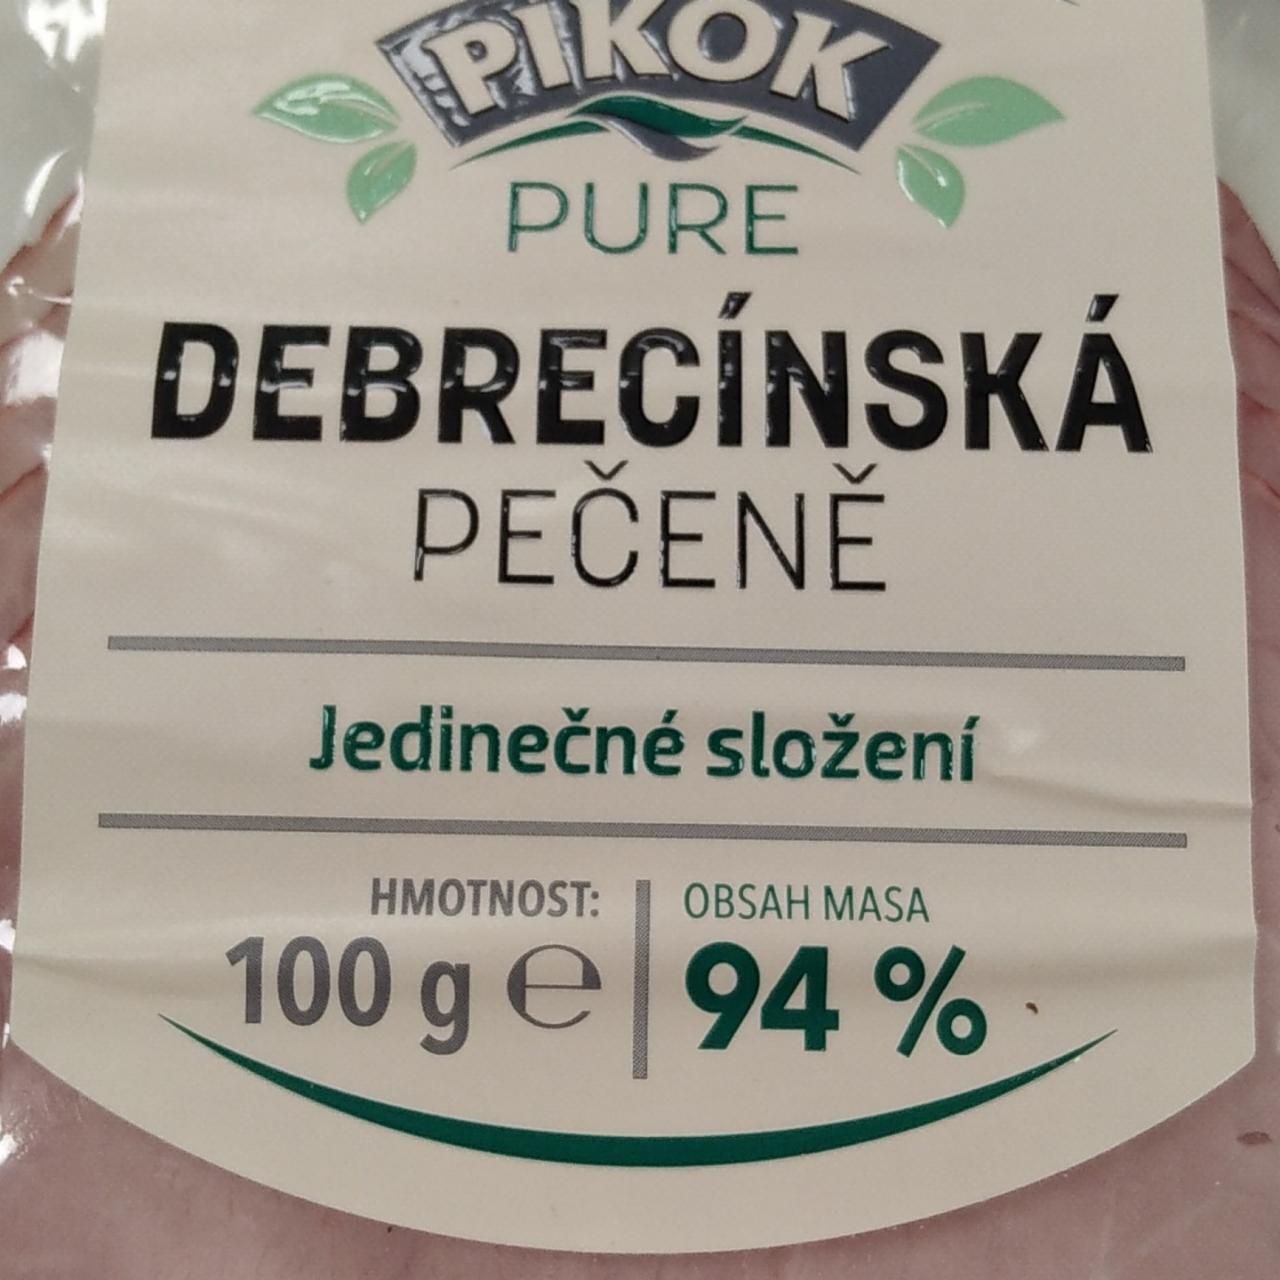 Fotografie - Debrecínská pečeně Pikok Pure